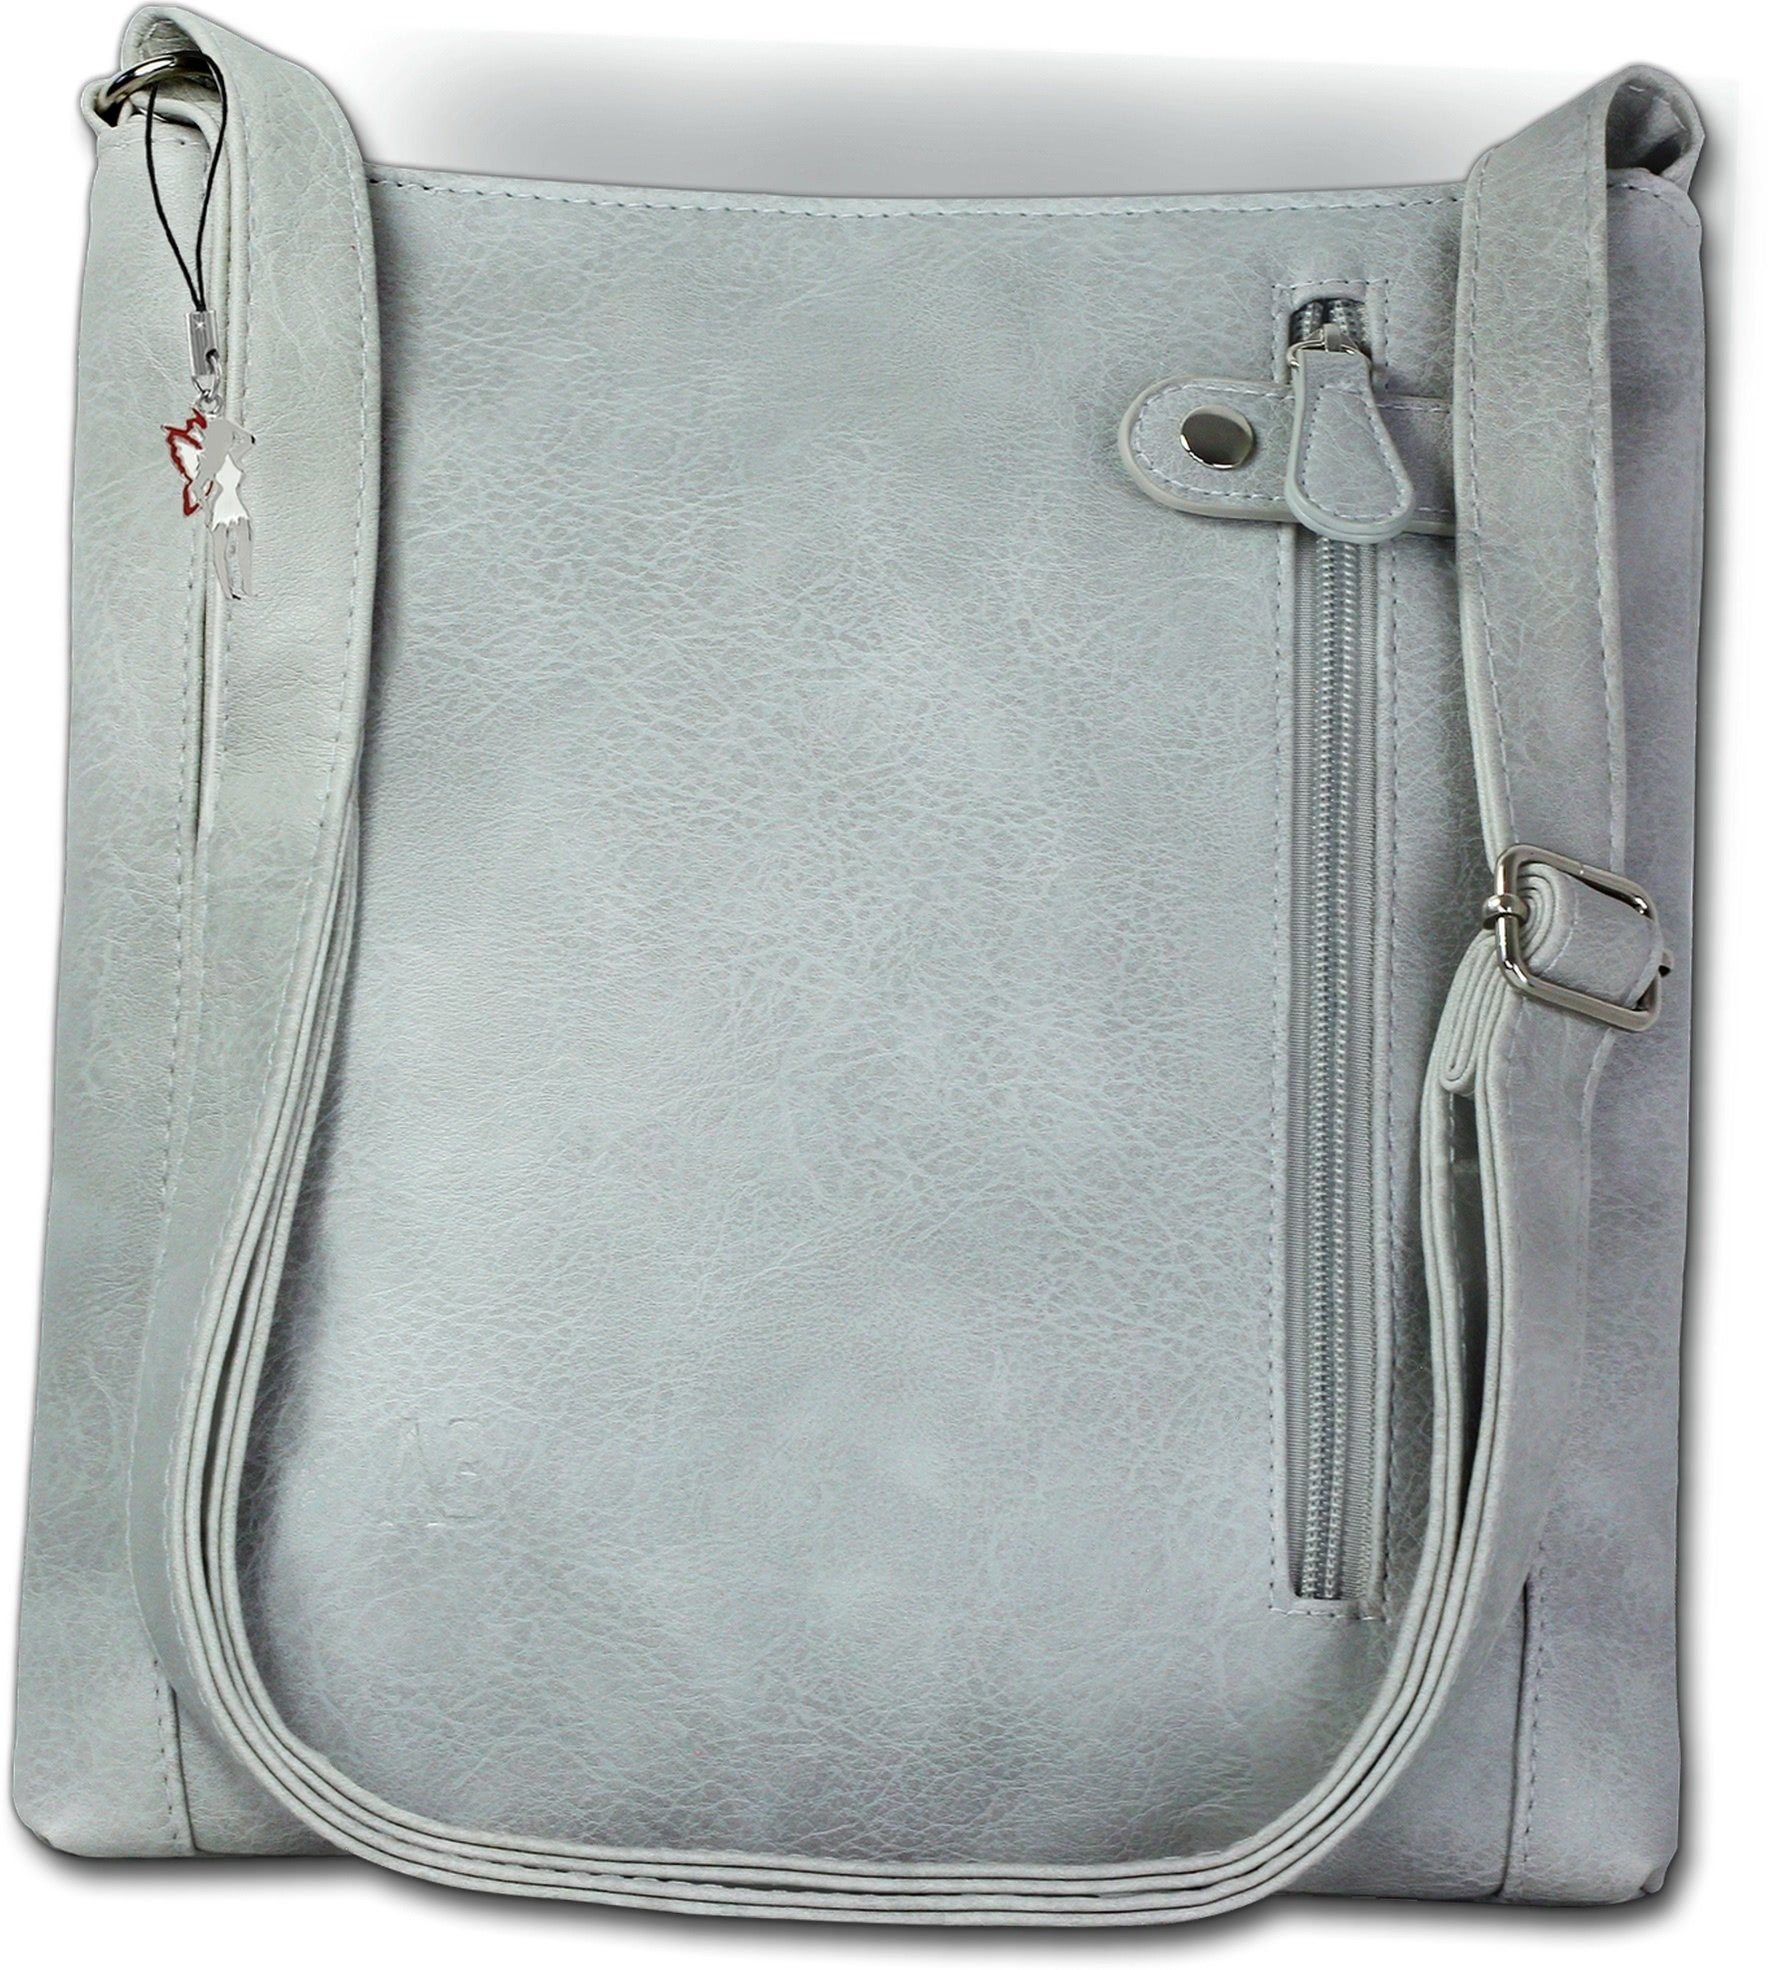 New Bags Umhängetasche New Bags Umhängetasche Handtasche grau  (Umhängetasche, Umhängetasche), Damen Handtasche, Umhängetasche grau, Größe  ca. 27,5cm, halbrund